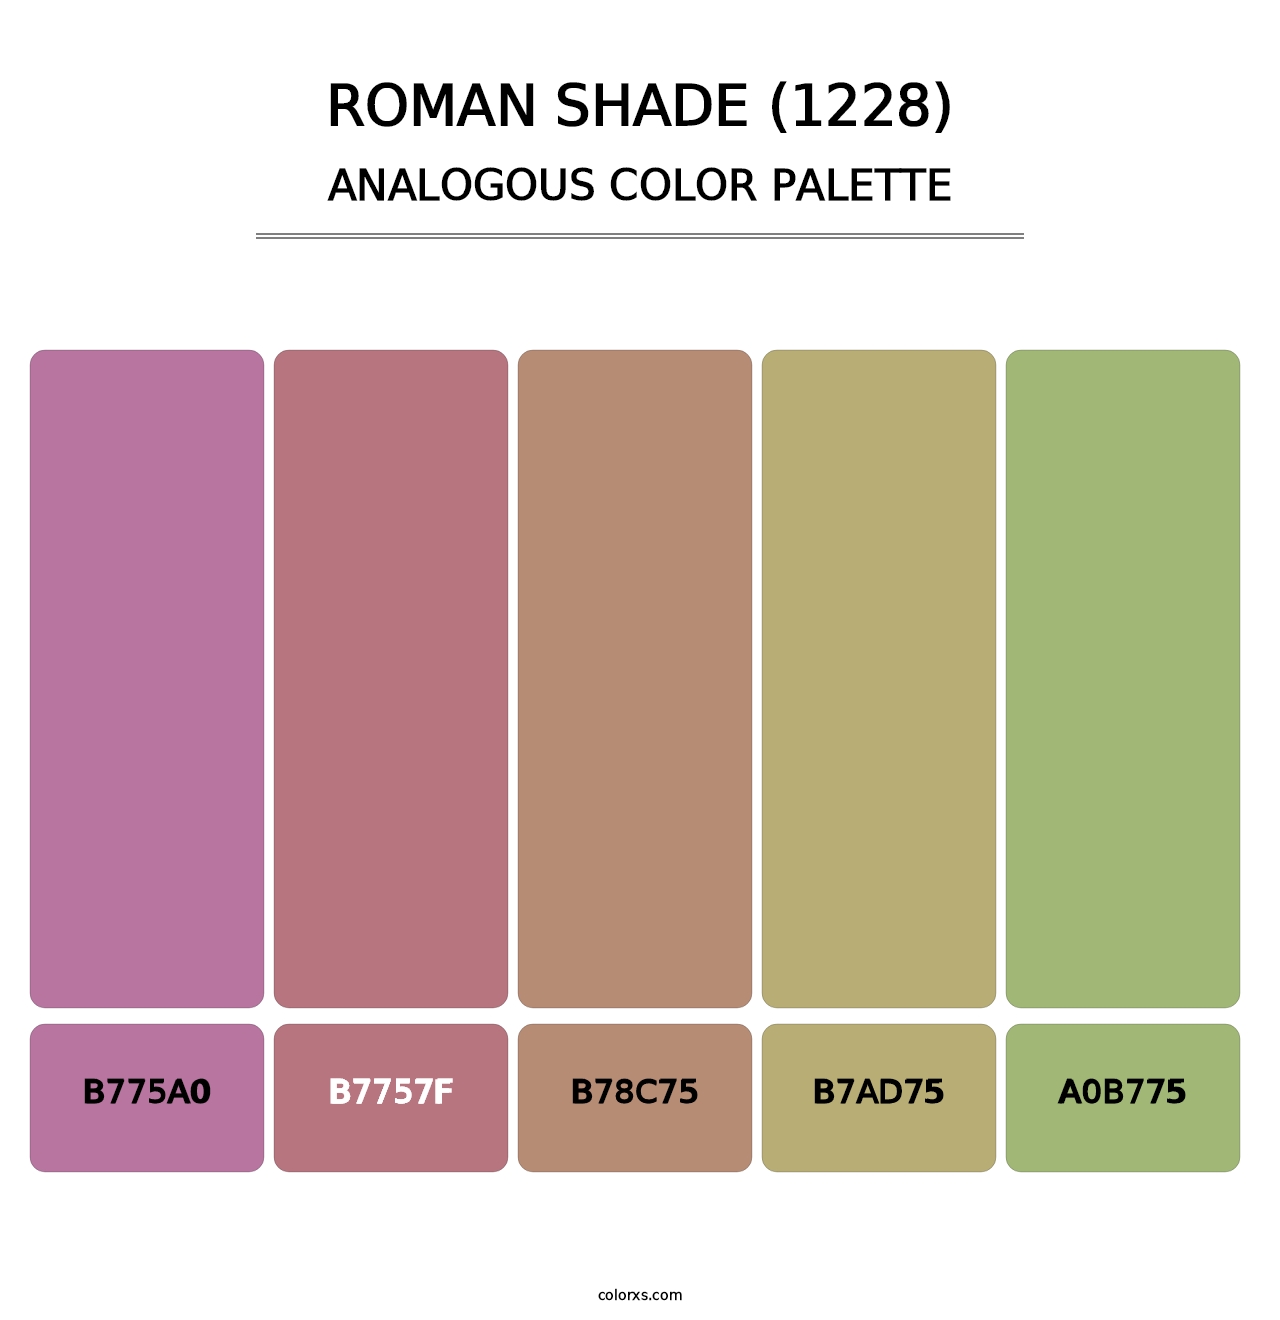 Roman Shade (1228) - Analogous Color Palette